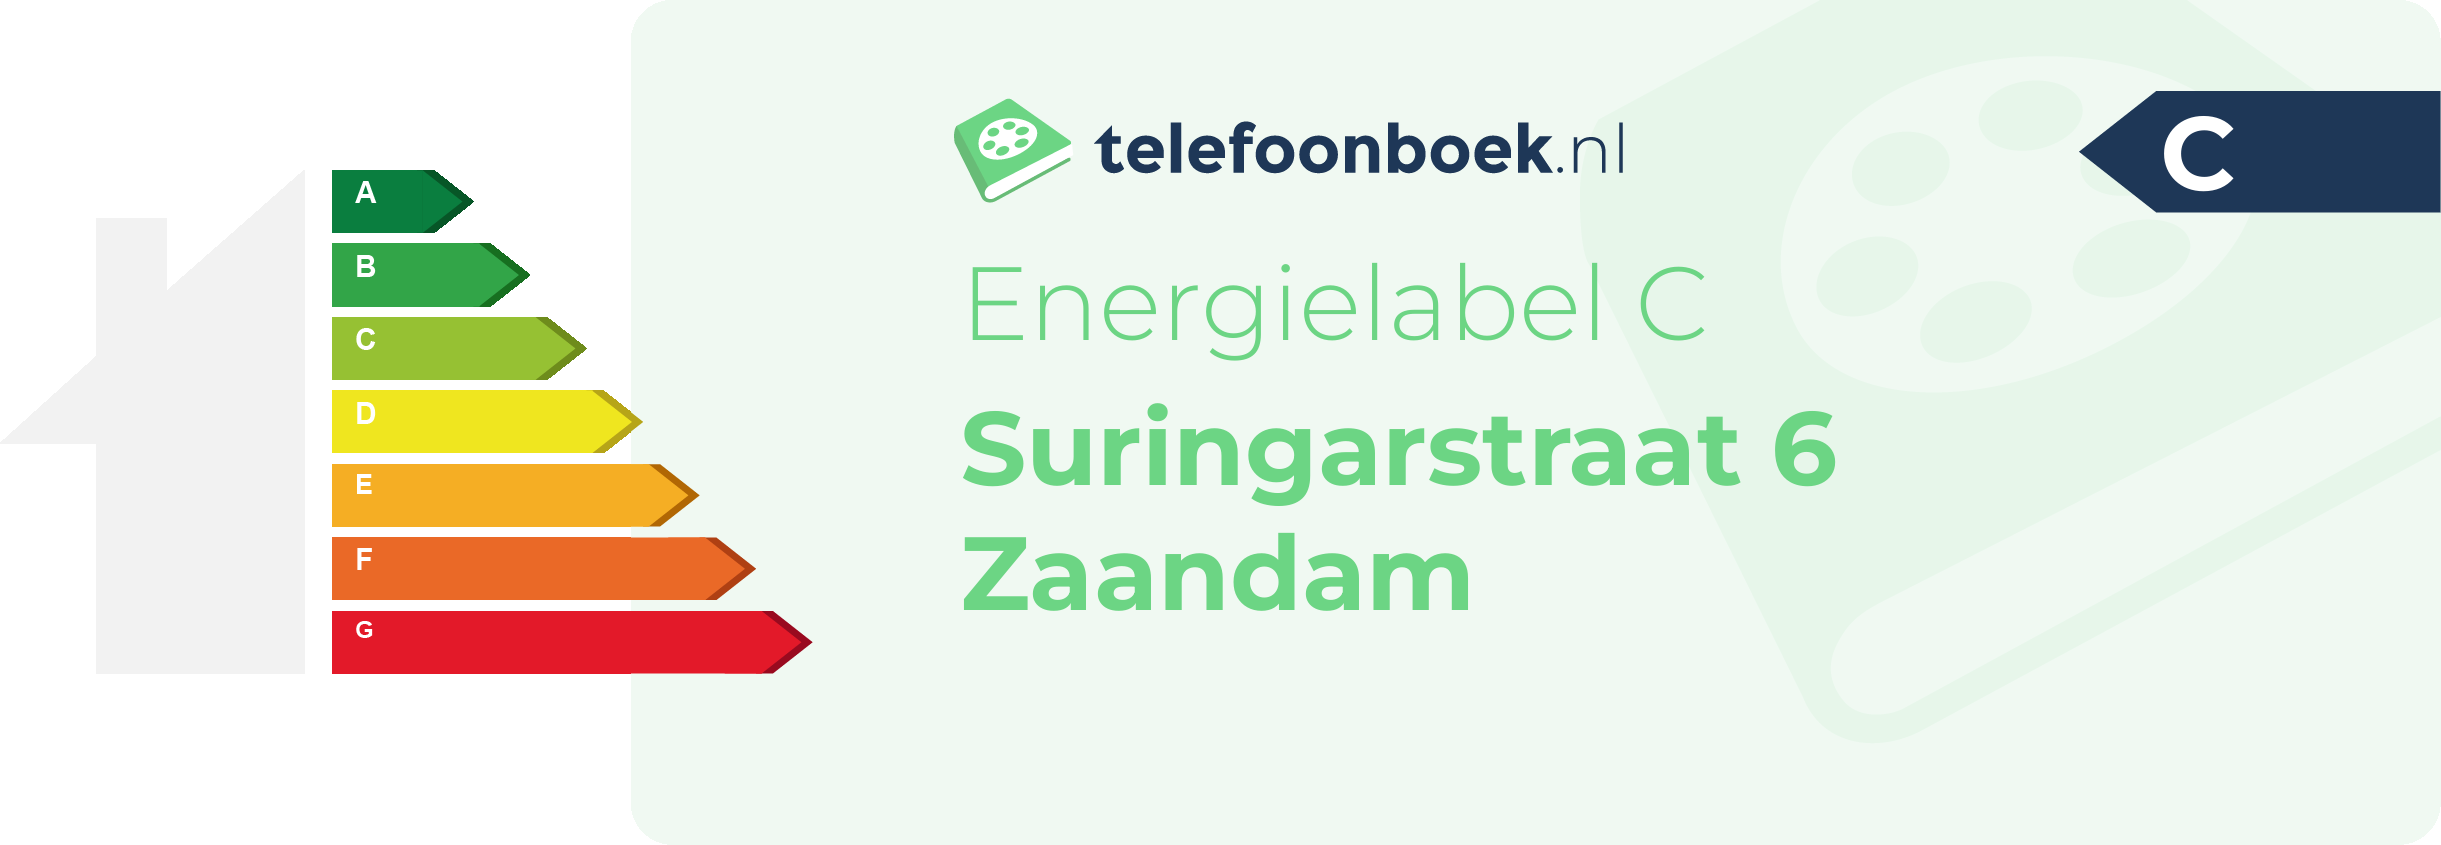 Energielabel Suringarstraat 6 Zaandam